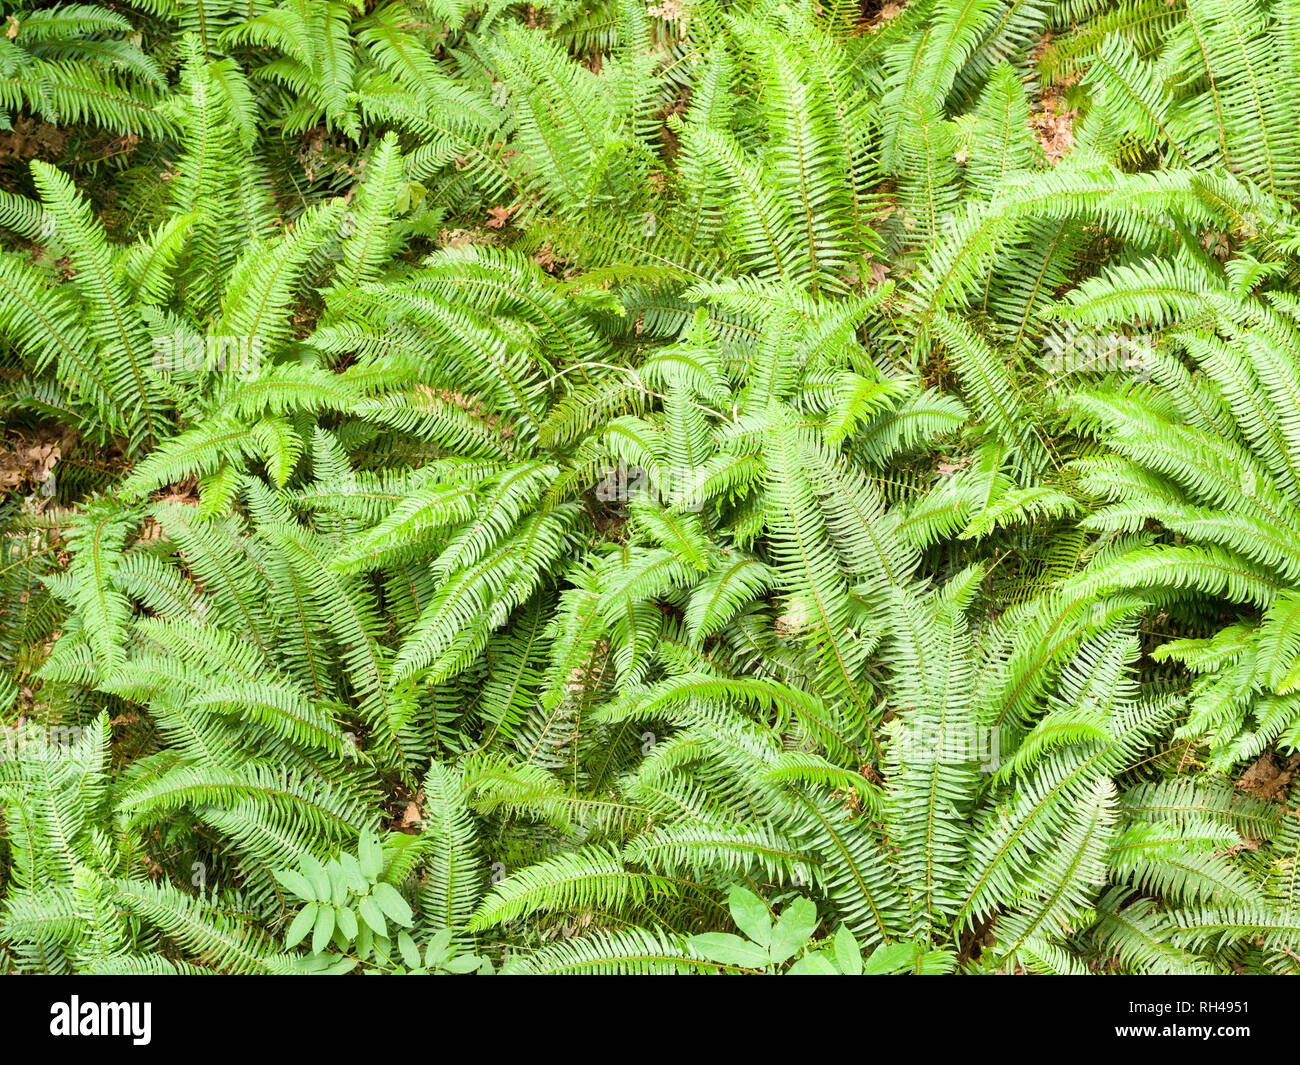 Waldboden Farne: ein Cluster von hellen grünen Farnen und anderen Unterwuchs Pflanzen in einem gemäßigten Regenwald an der Küste. Stockfoto